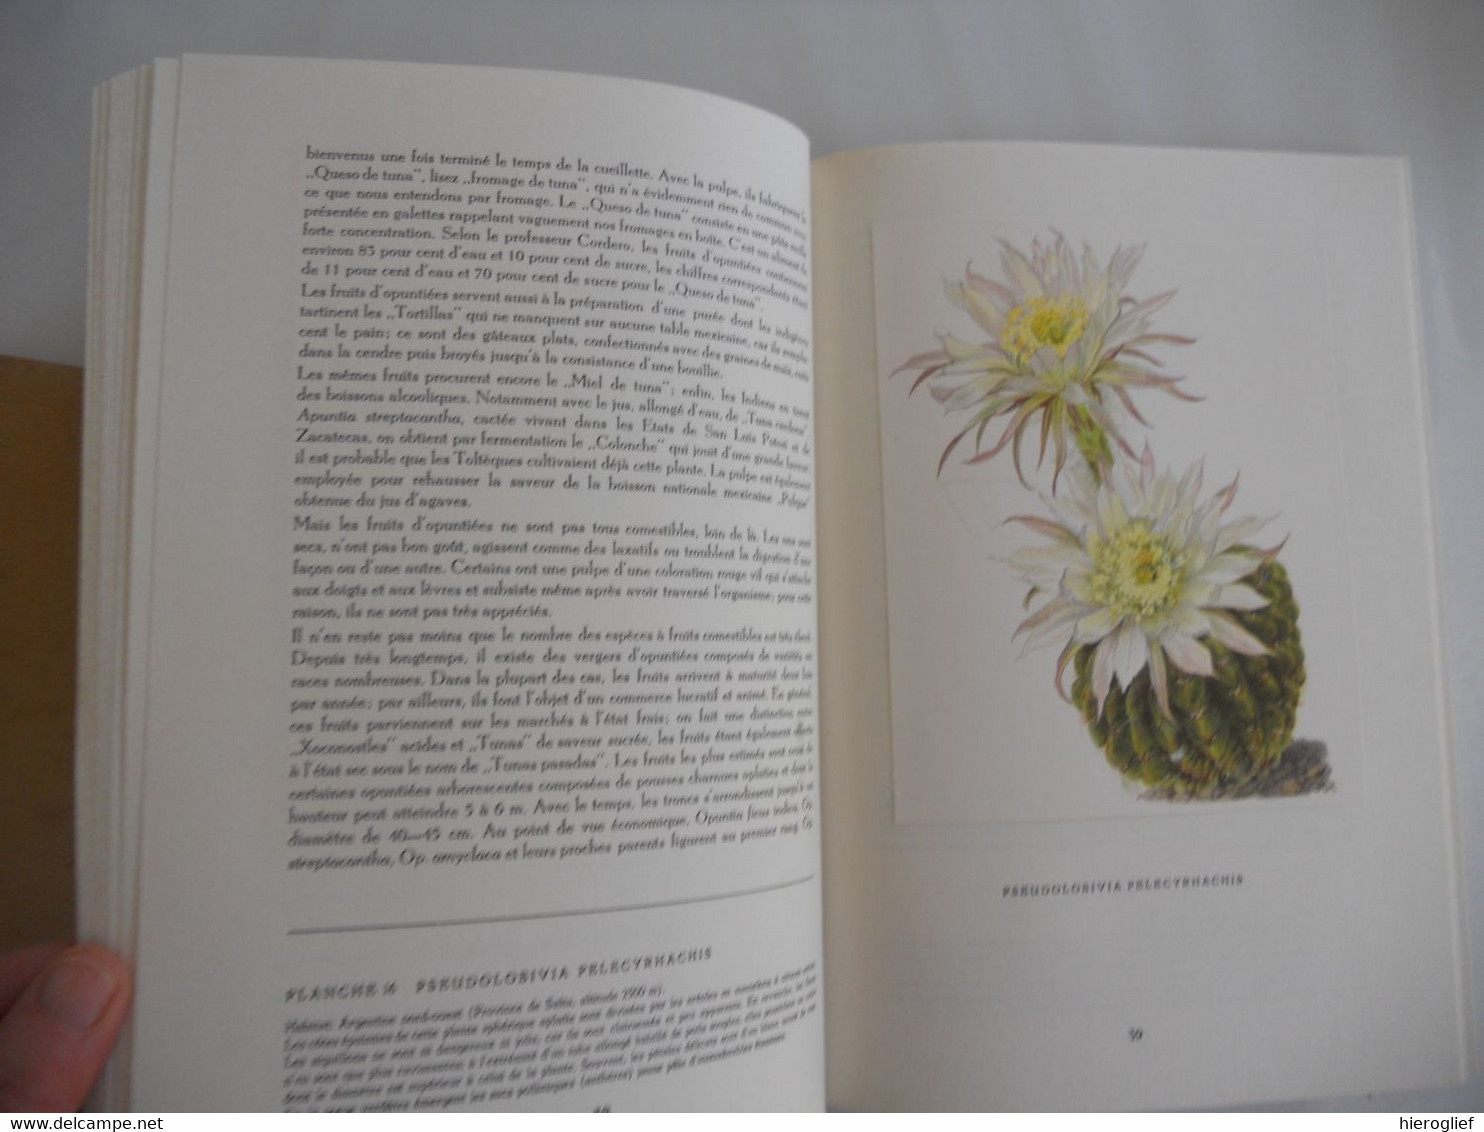 Artis album Les Cactus + 60 images complèt édition française 1955 cactées fleurs utilité aiguillons fruits semancesz